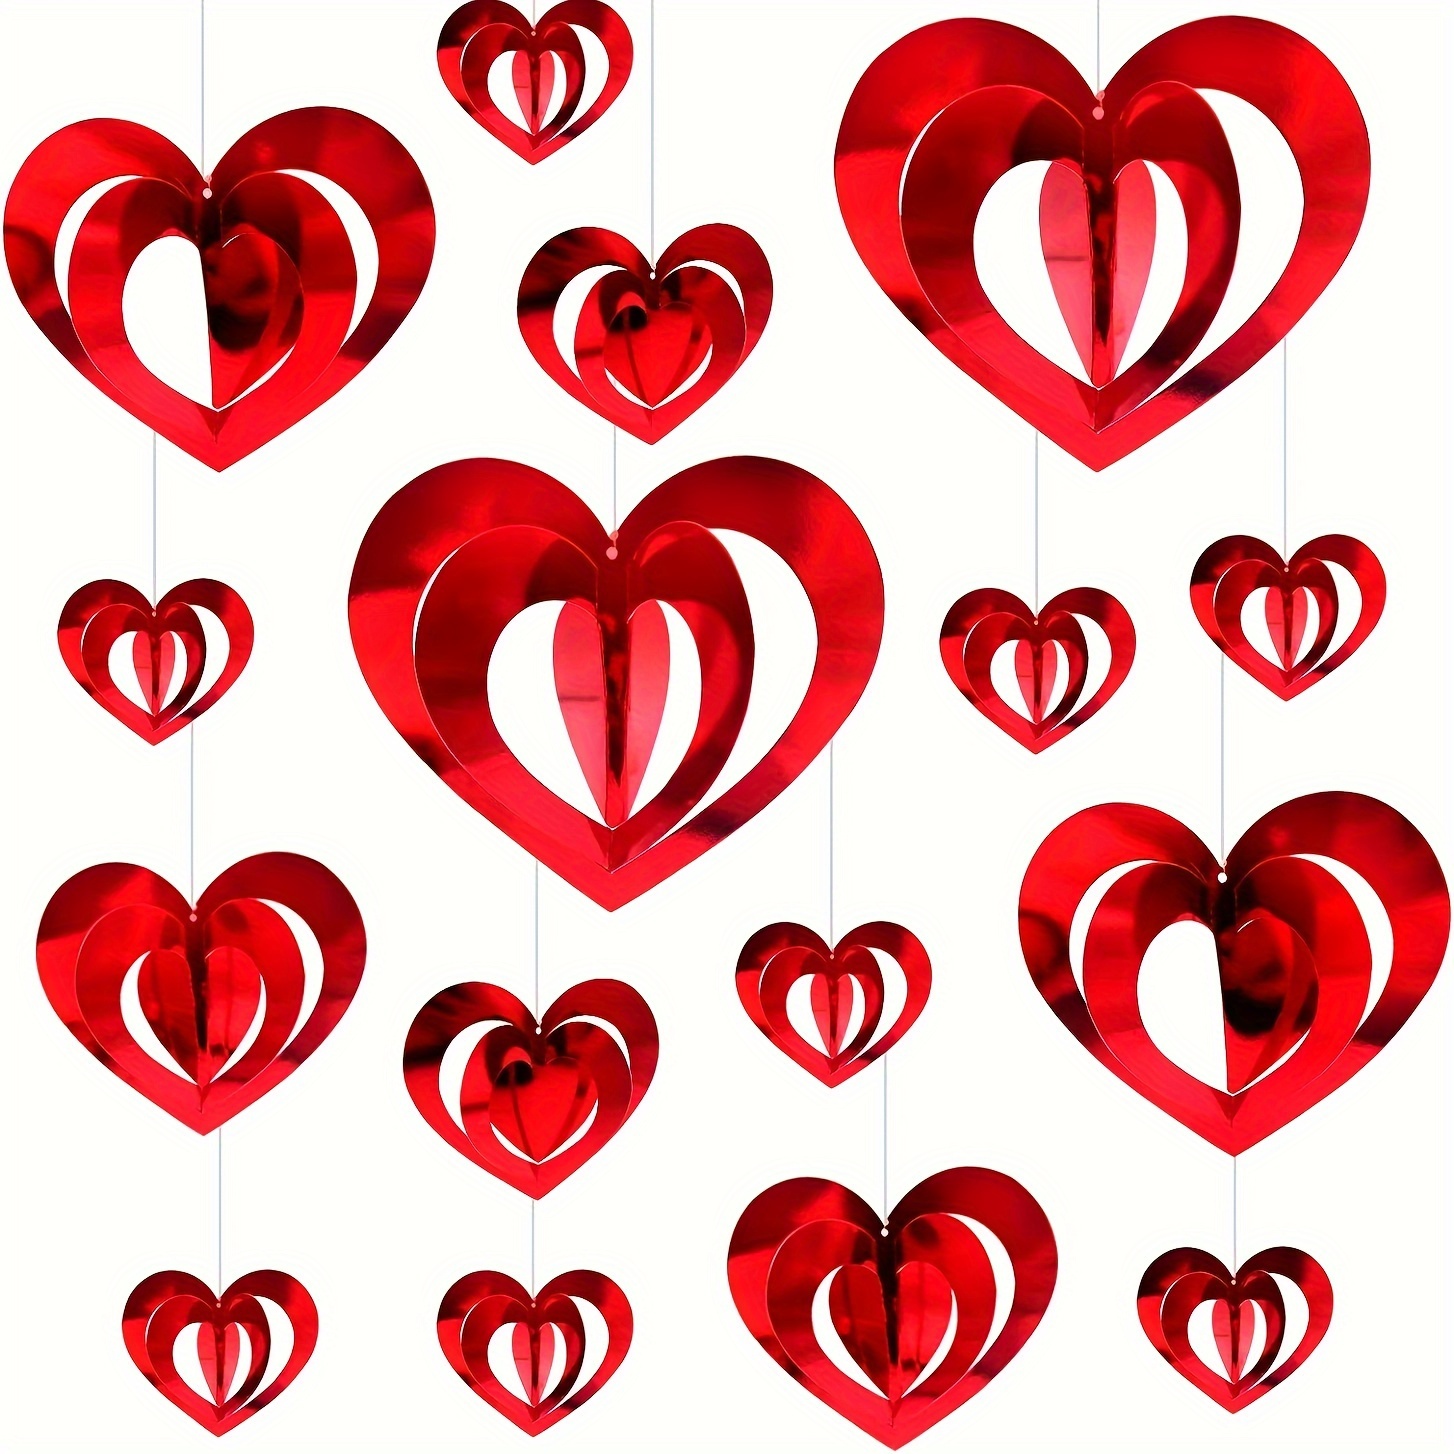 Attrape-soleil I Love You avec cœur en forme de cœur pour Saint Valentin